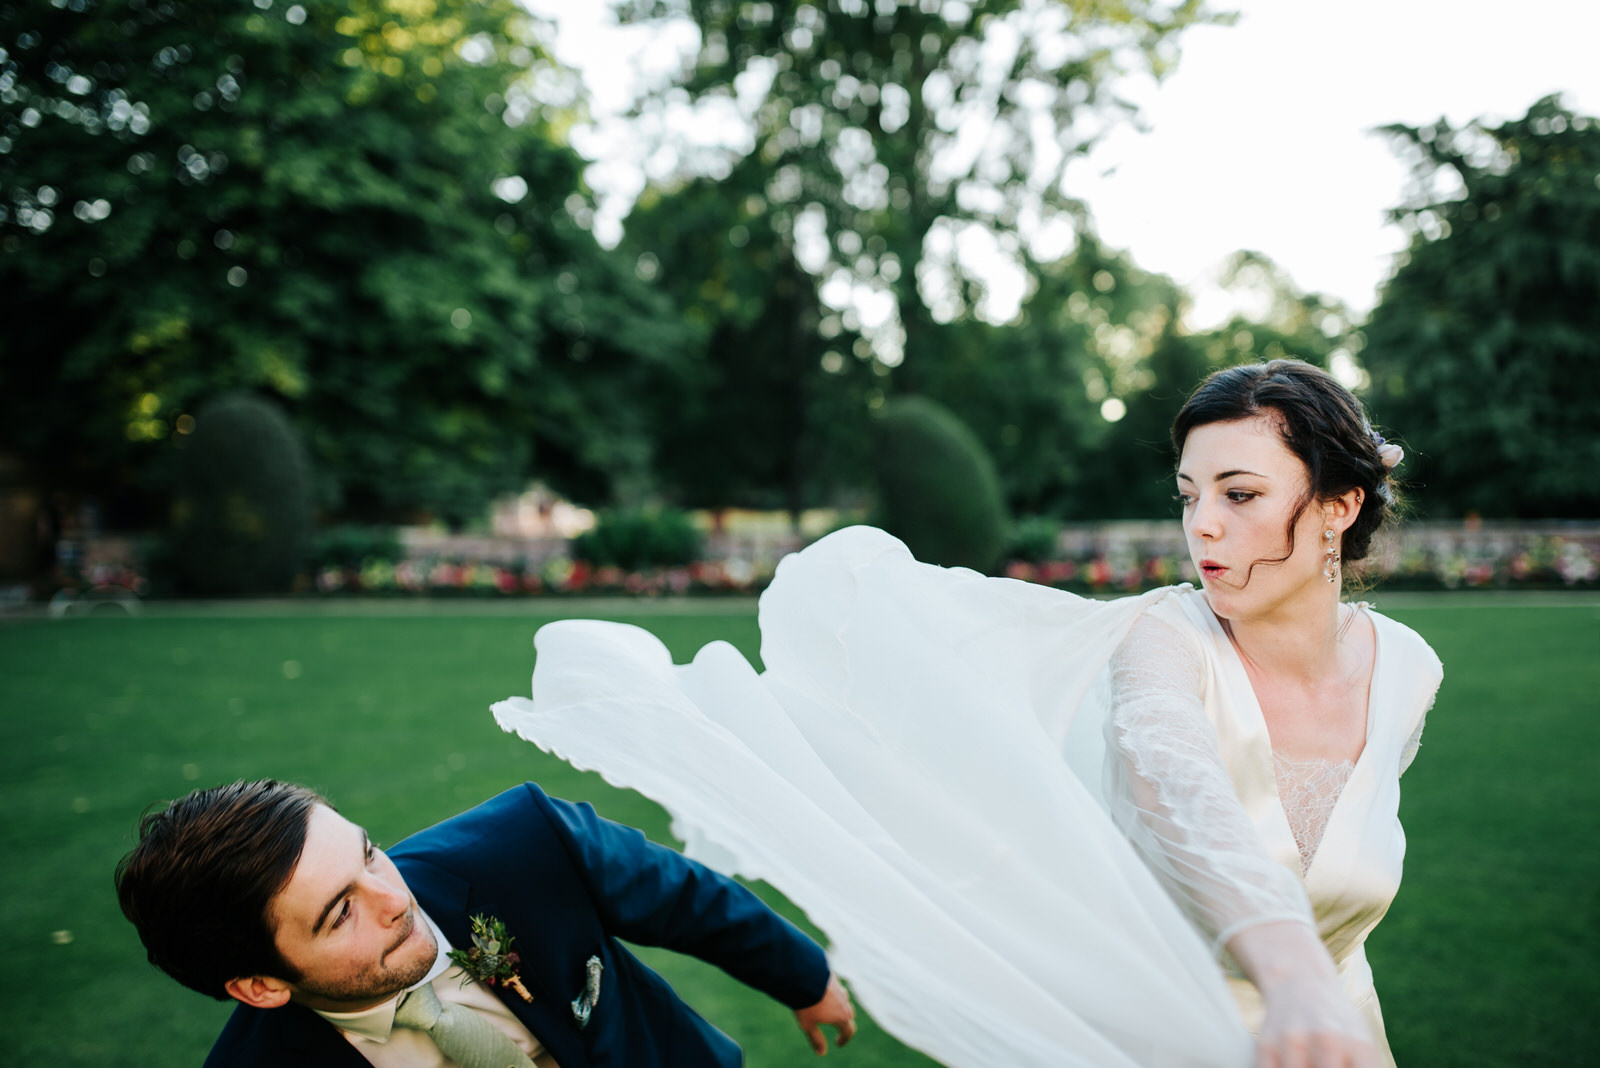 Bride swings her dress at groom pretending it is a superhero cap